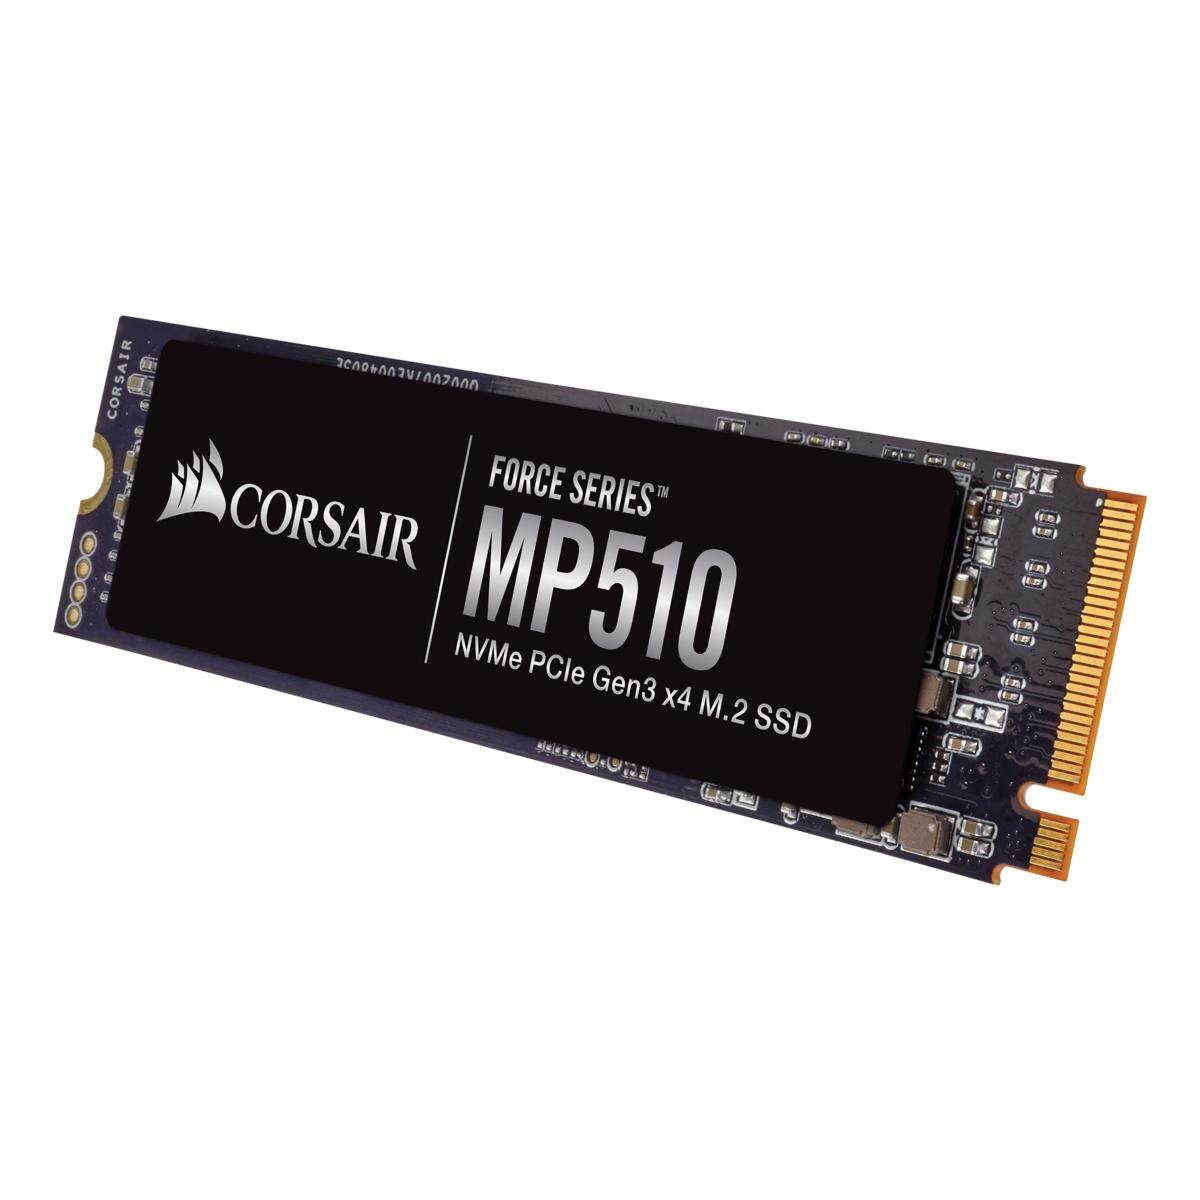 Corsair M.2 PCIE NVME MP510 240GB/480GB/960GB/1920GB  SSD Solid State Drives (F240GBMP510/F480GBMP510/F960GBMP510/F1920GBMP510)